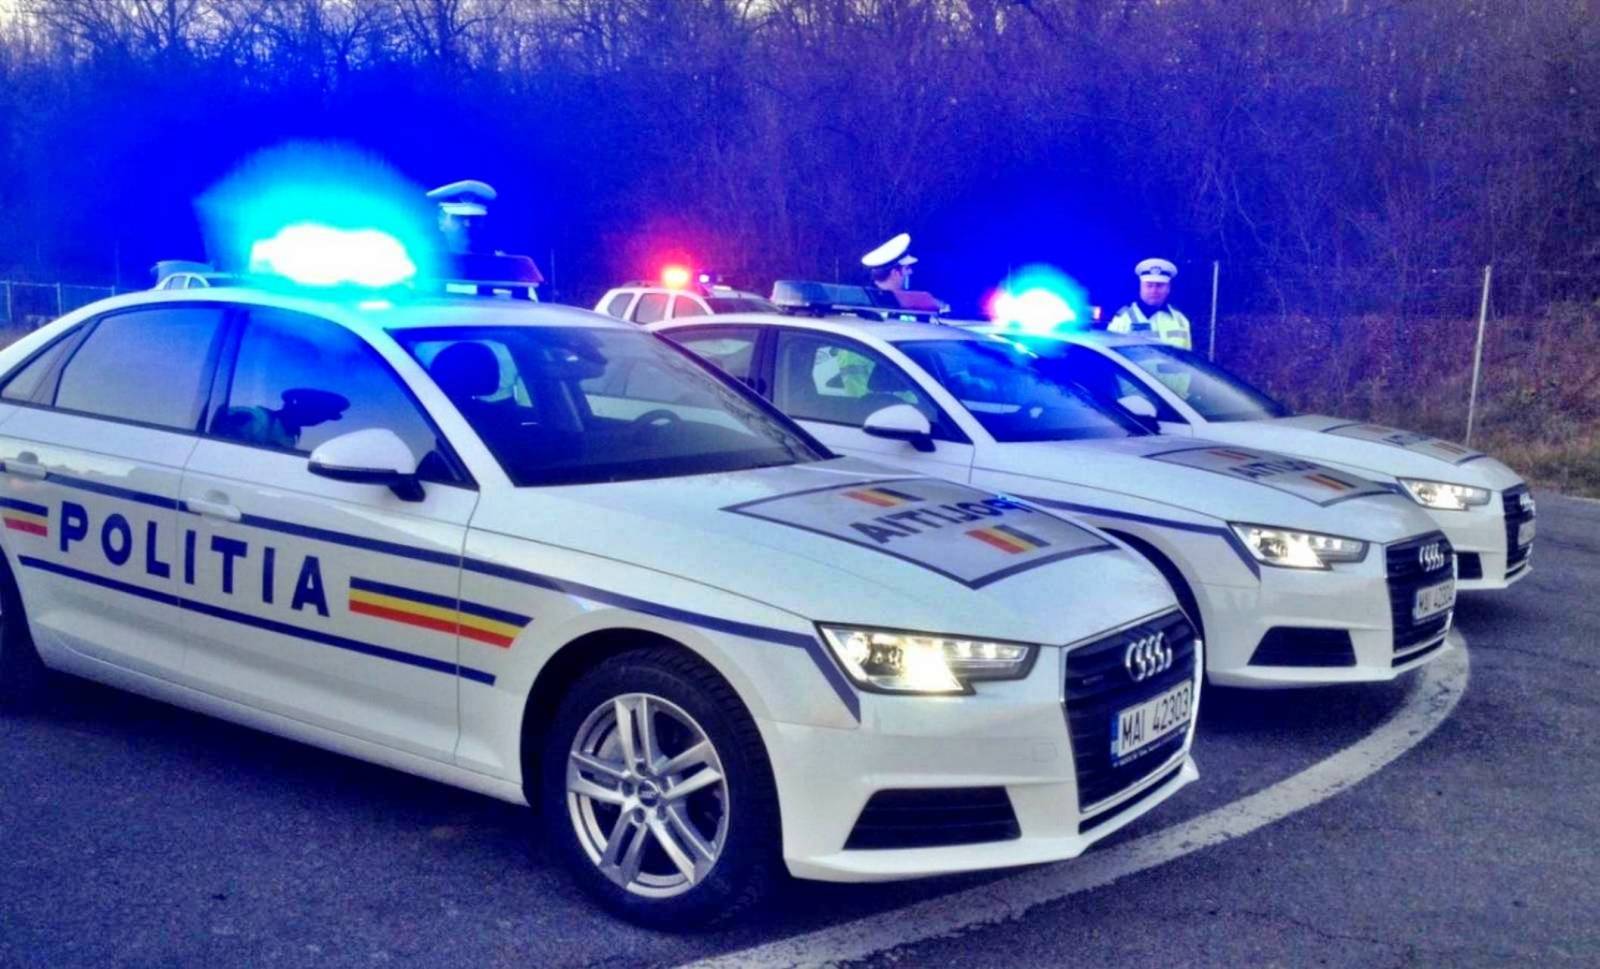 Det rumænske politi fortsætter trafikrazziaer og opdager stofforbrug